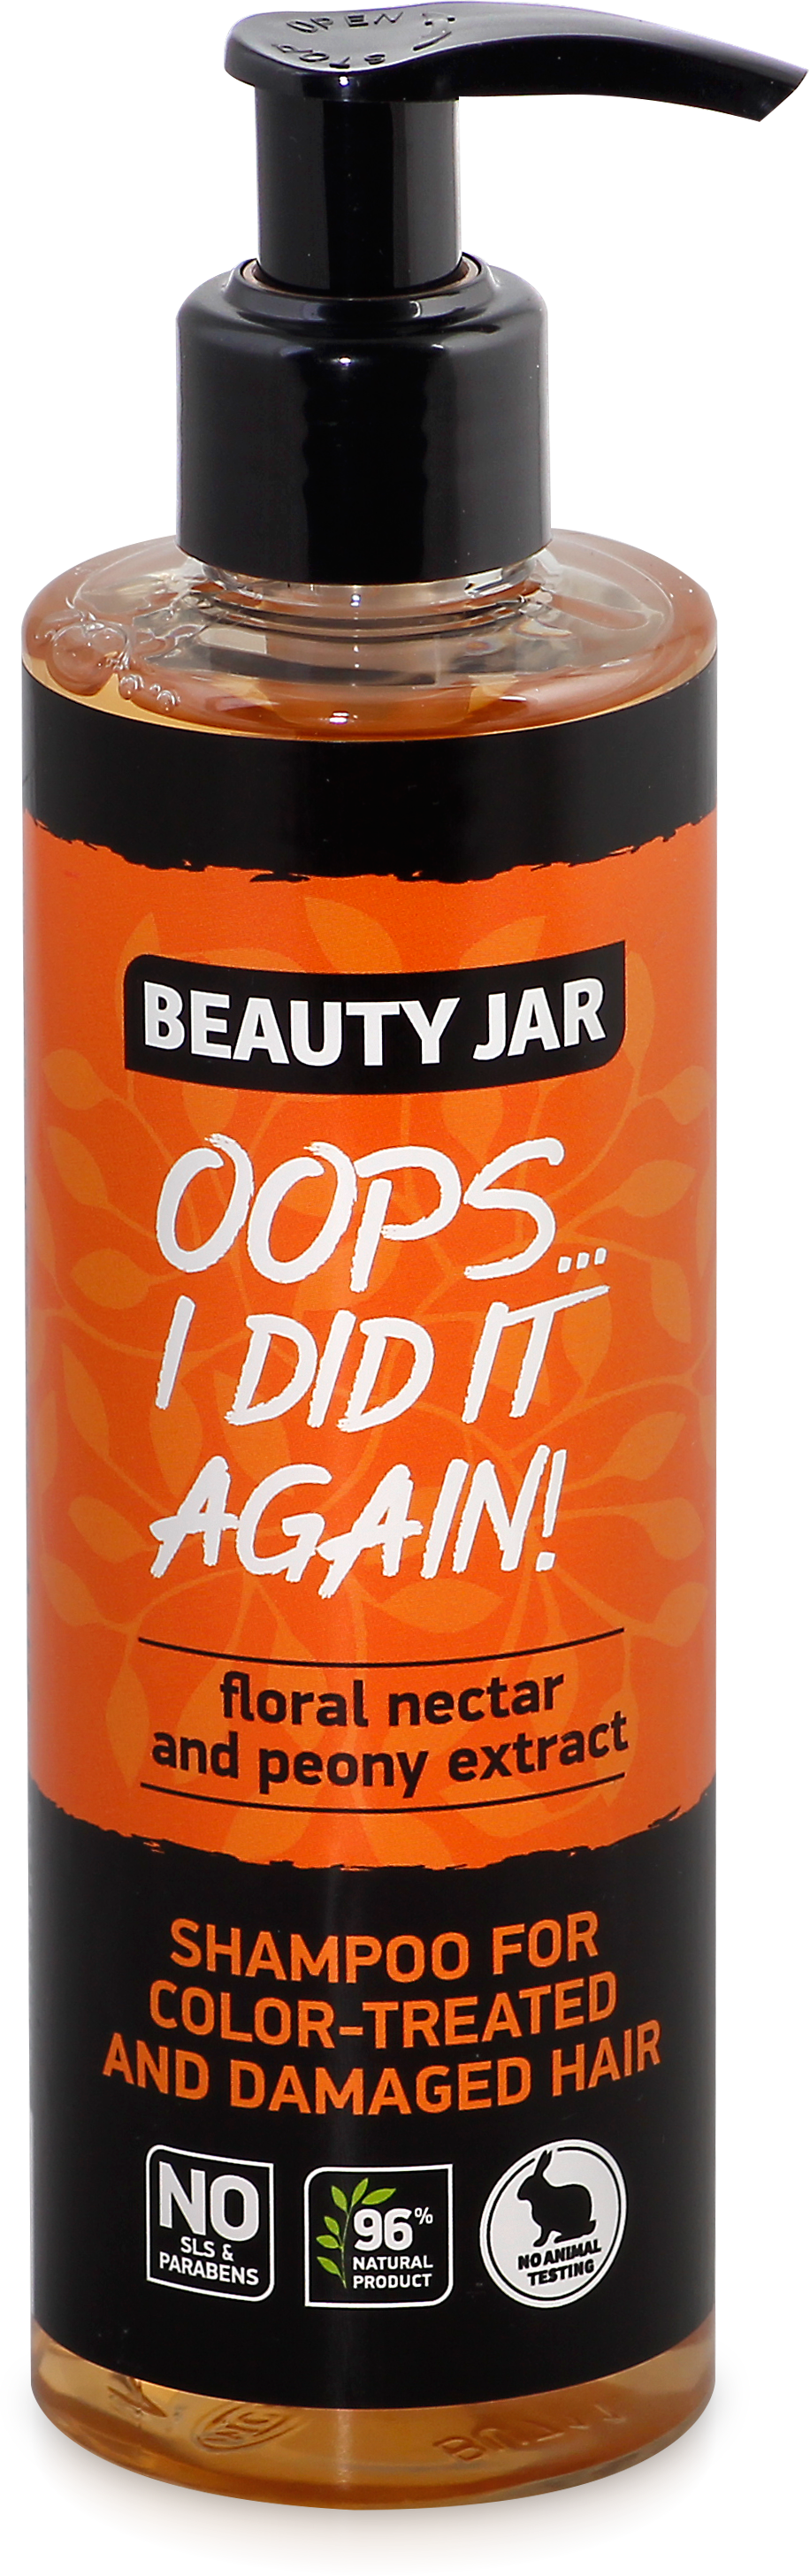 Шампунь Beauty Jar Oops...i did it again, для окрашенных и поврежденных волос, 250 мл - фото 1